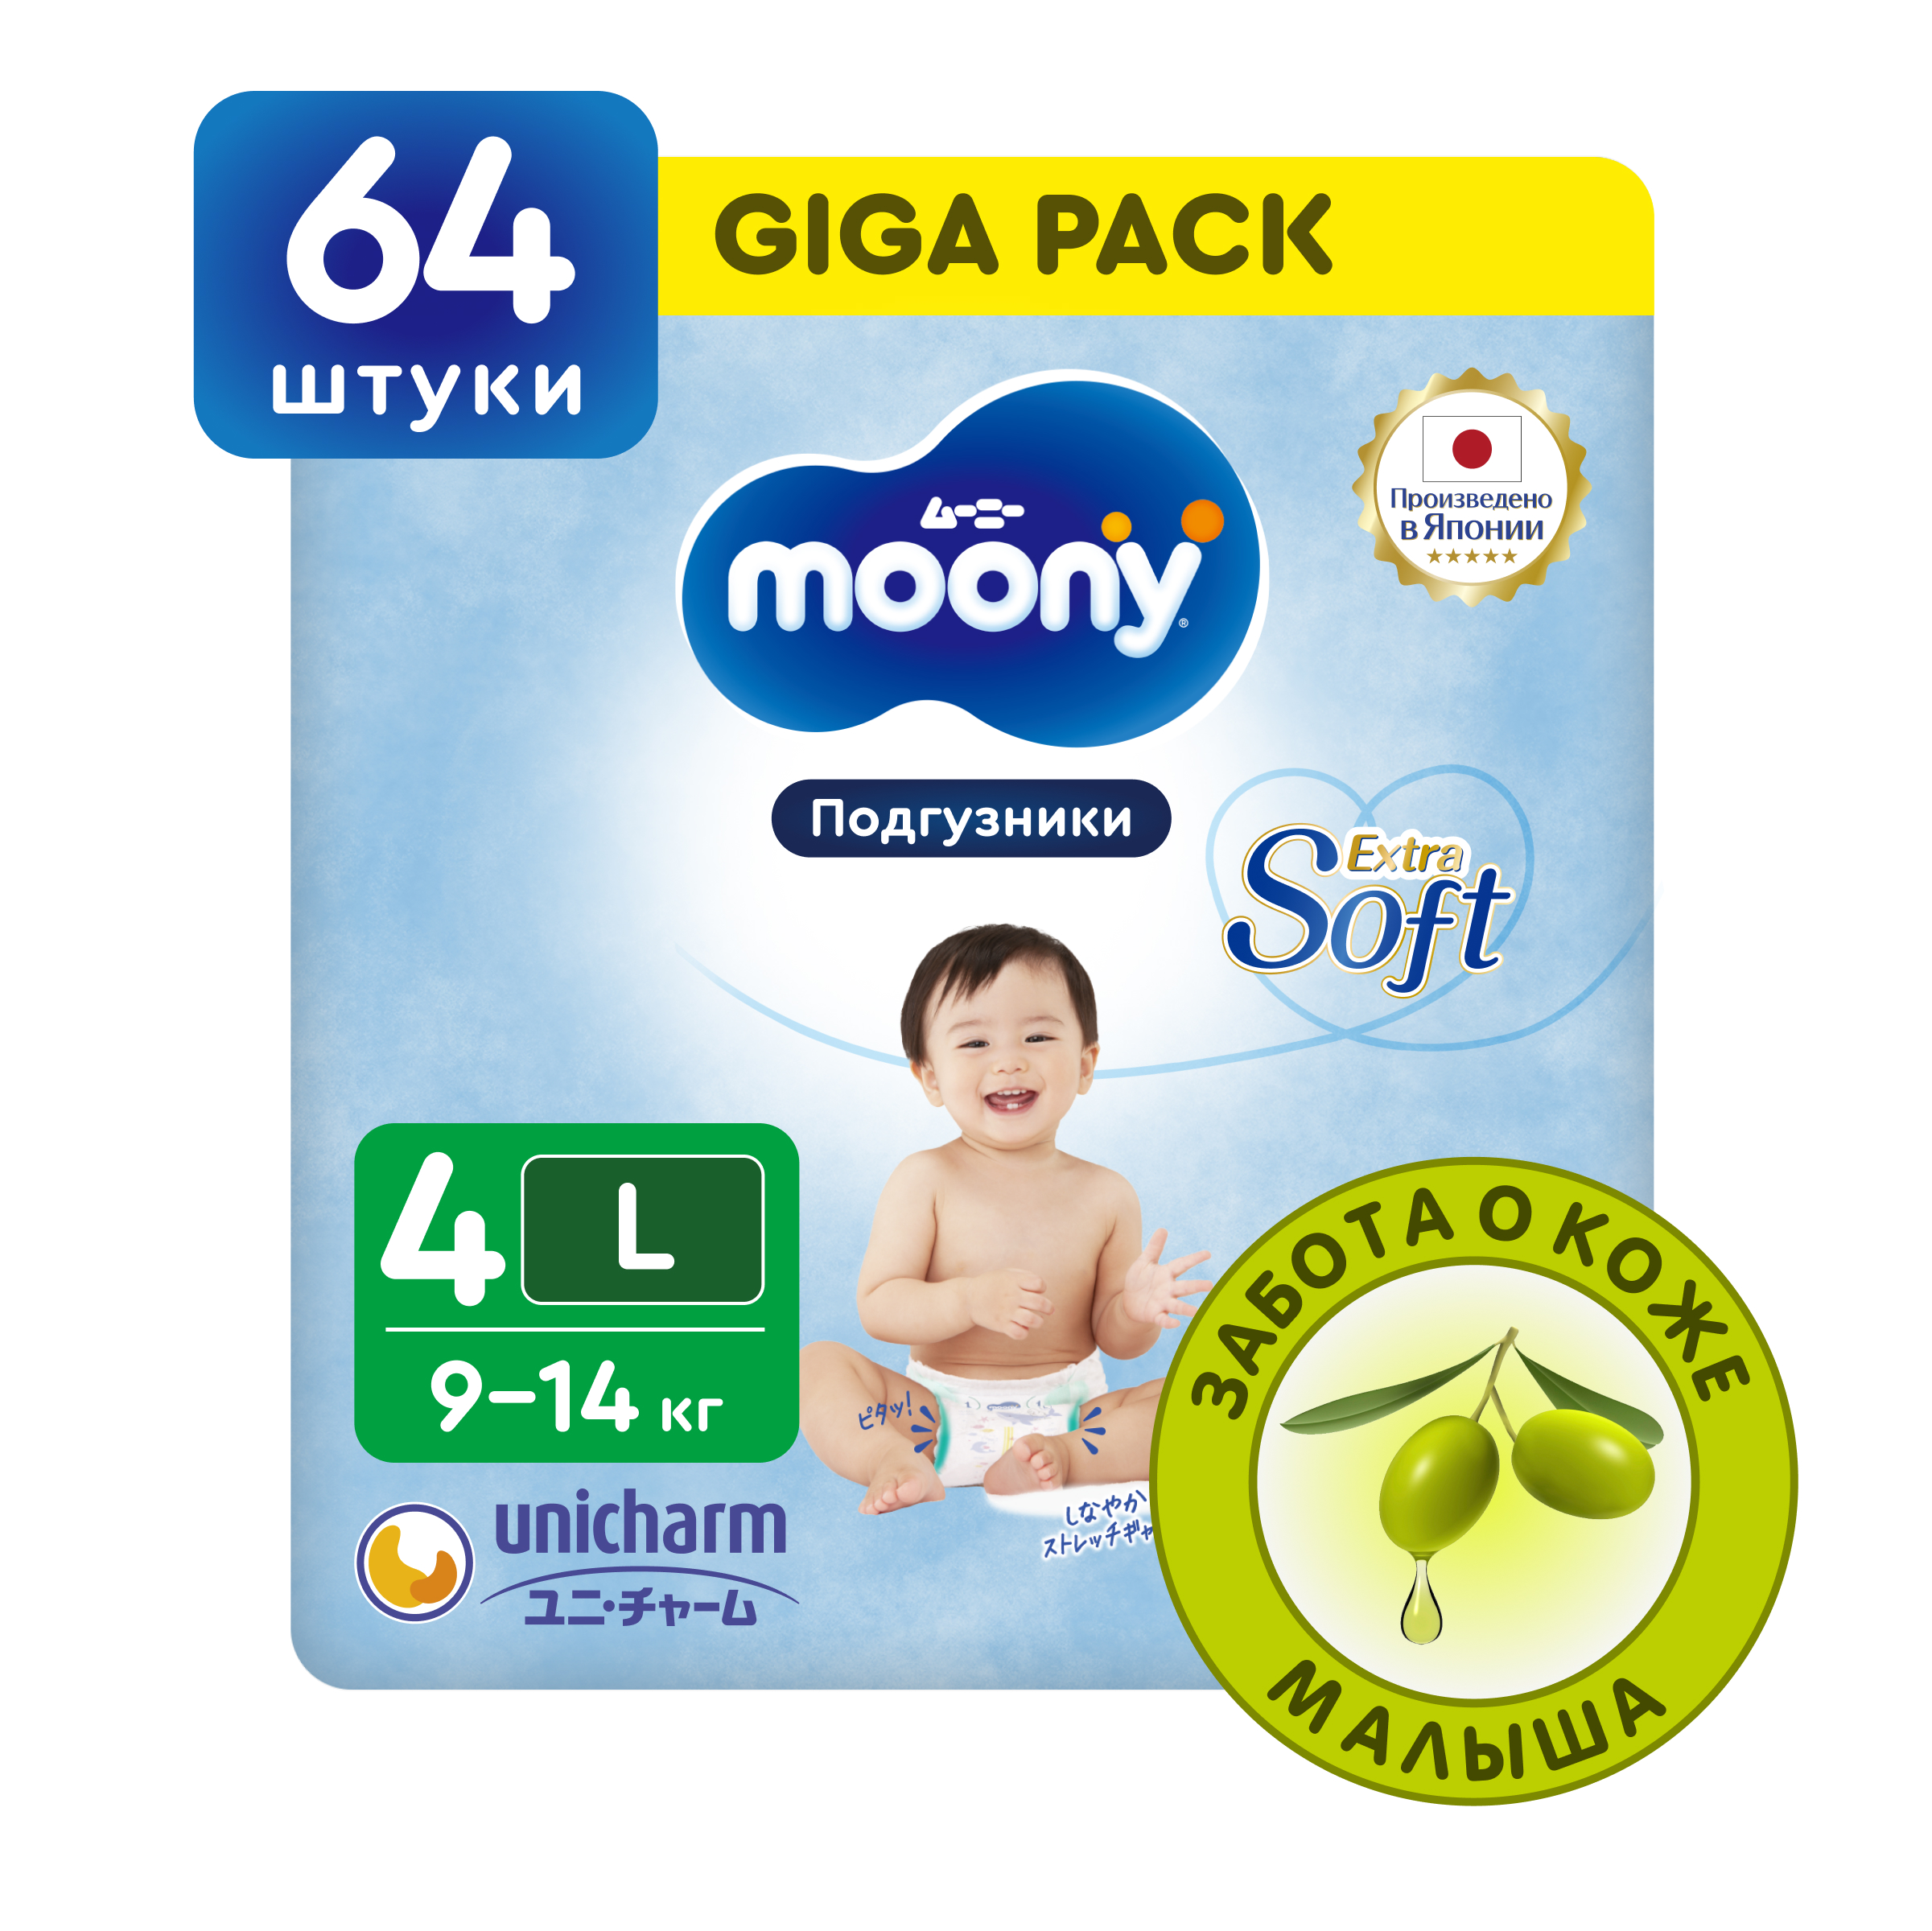 Японские подгузники детские Moony AirSilky Extra Soft 4 L, 9-14 кг, GIGA, 64 шт японские подгузники детские moony extra soft 4 l 9 14 кг 54 шт